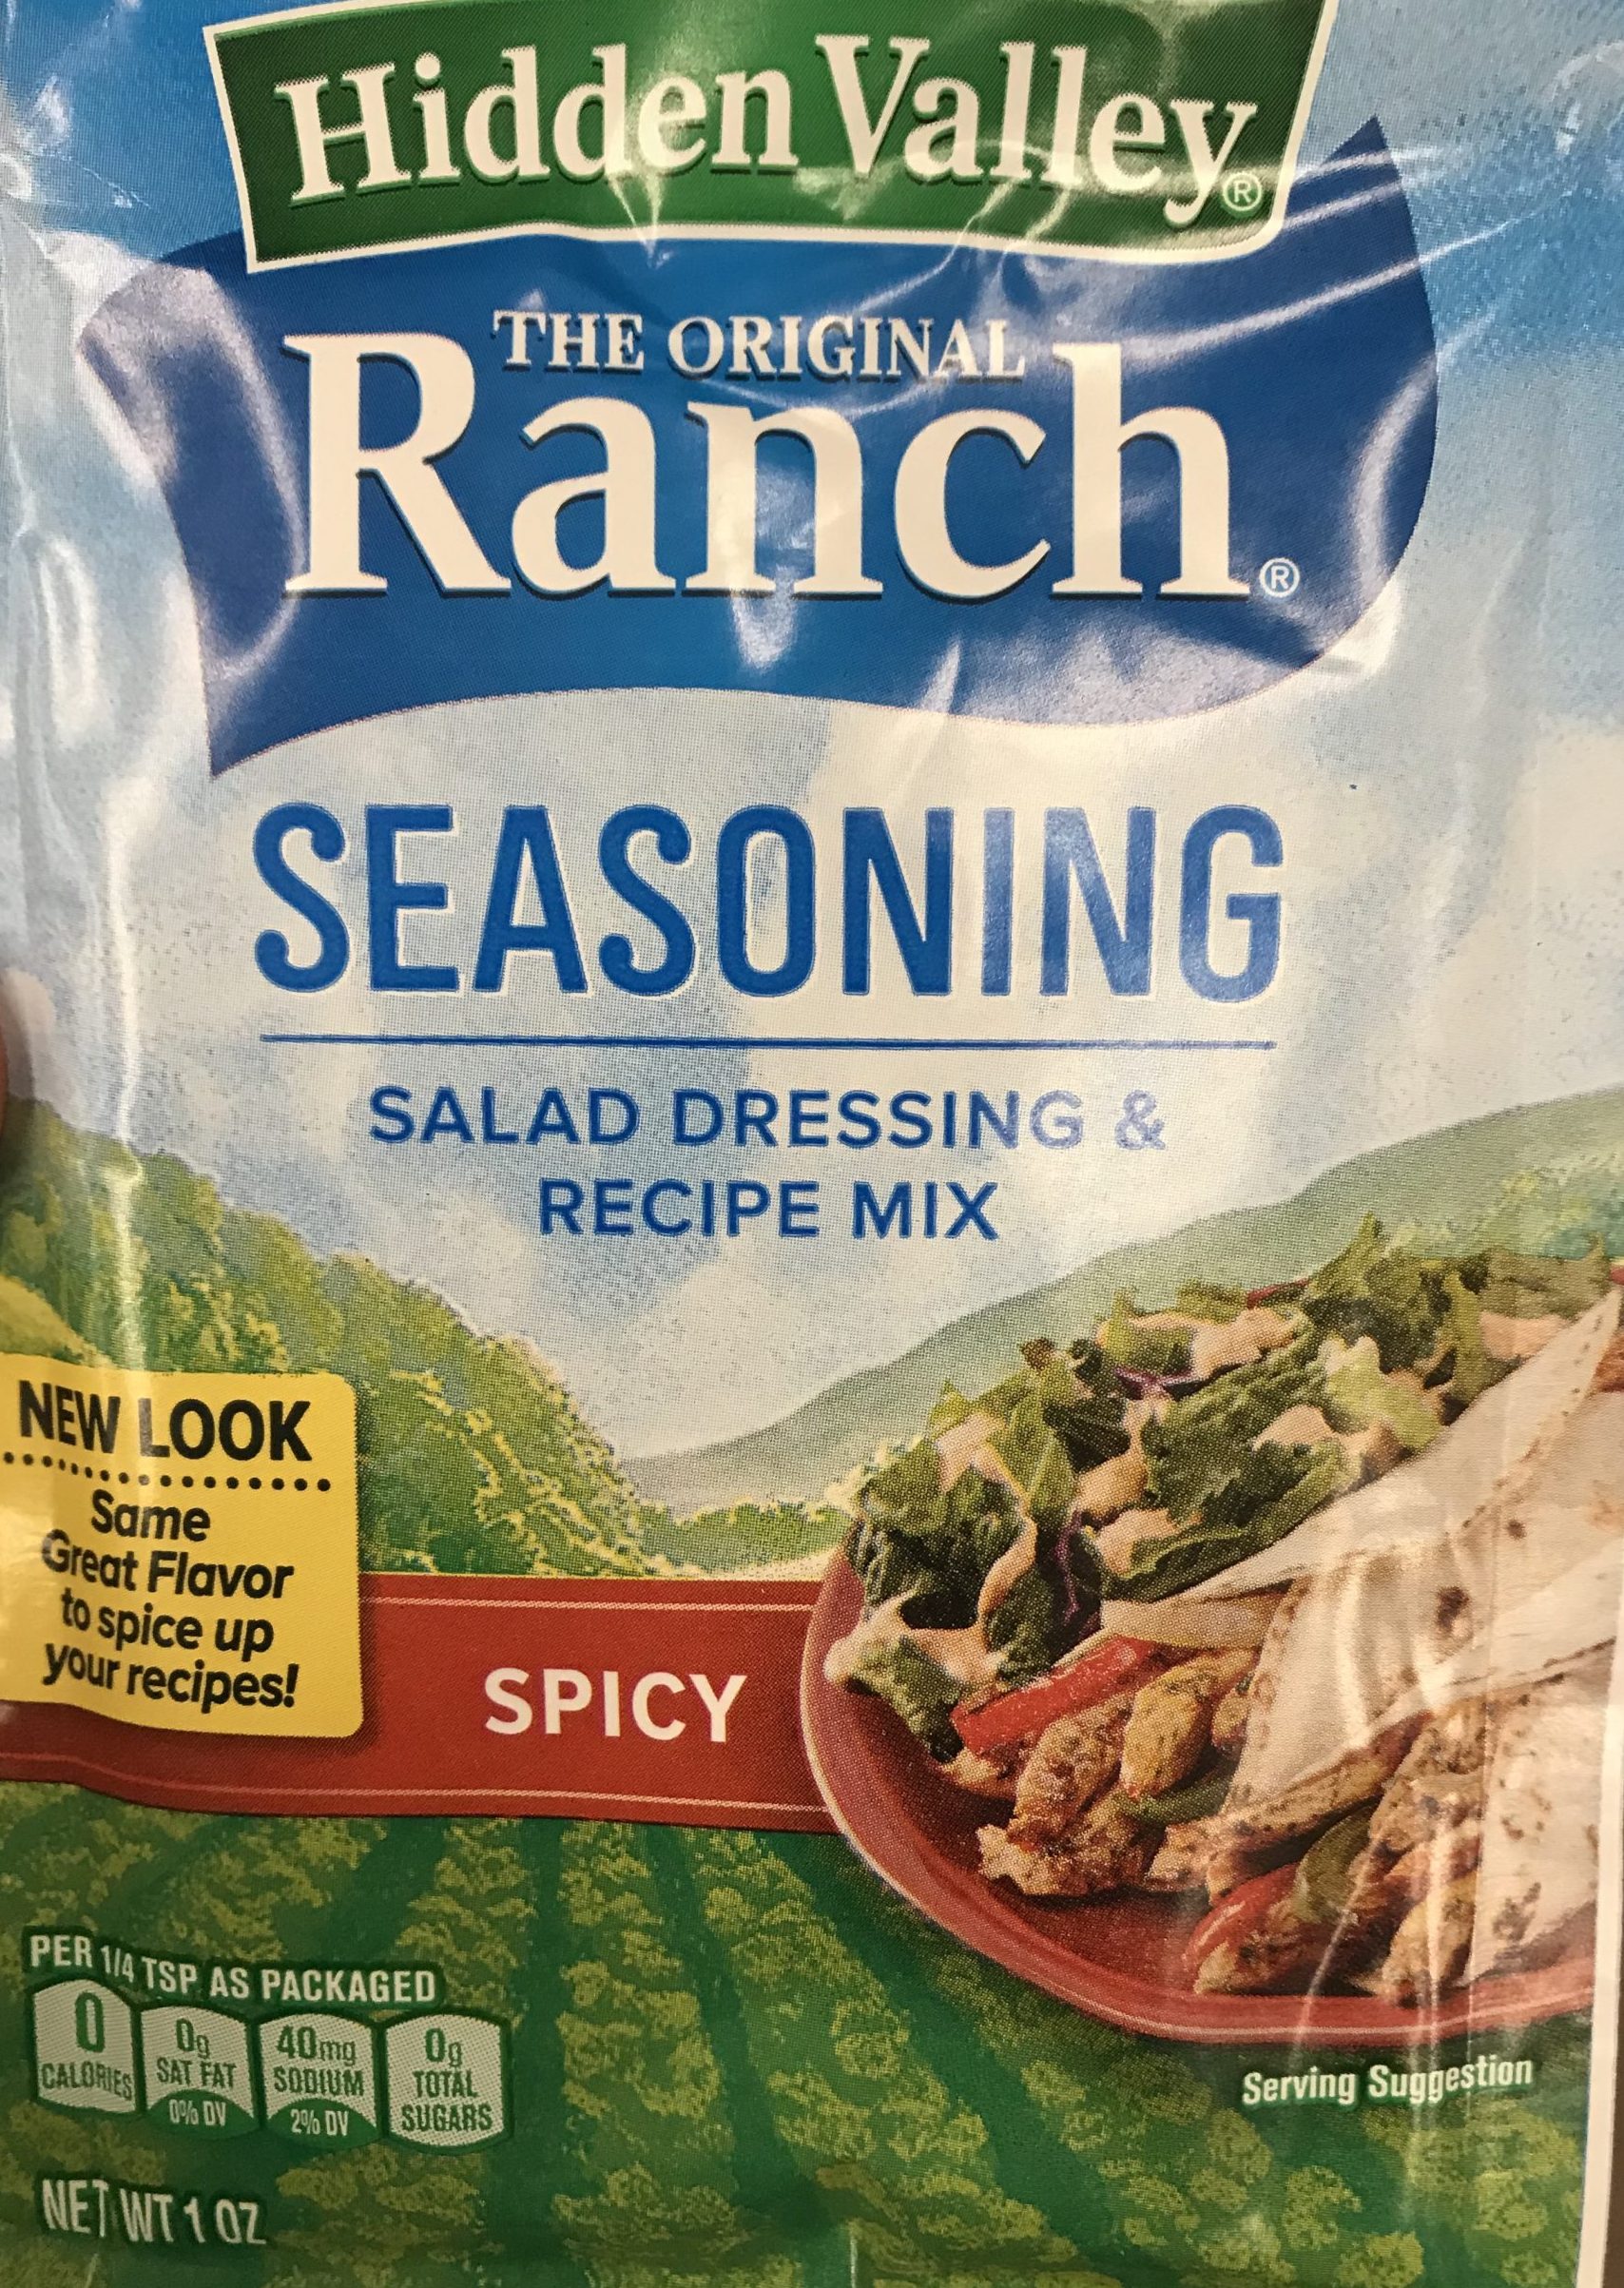 fiesta ranch packet